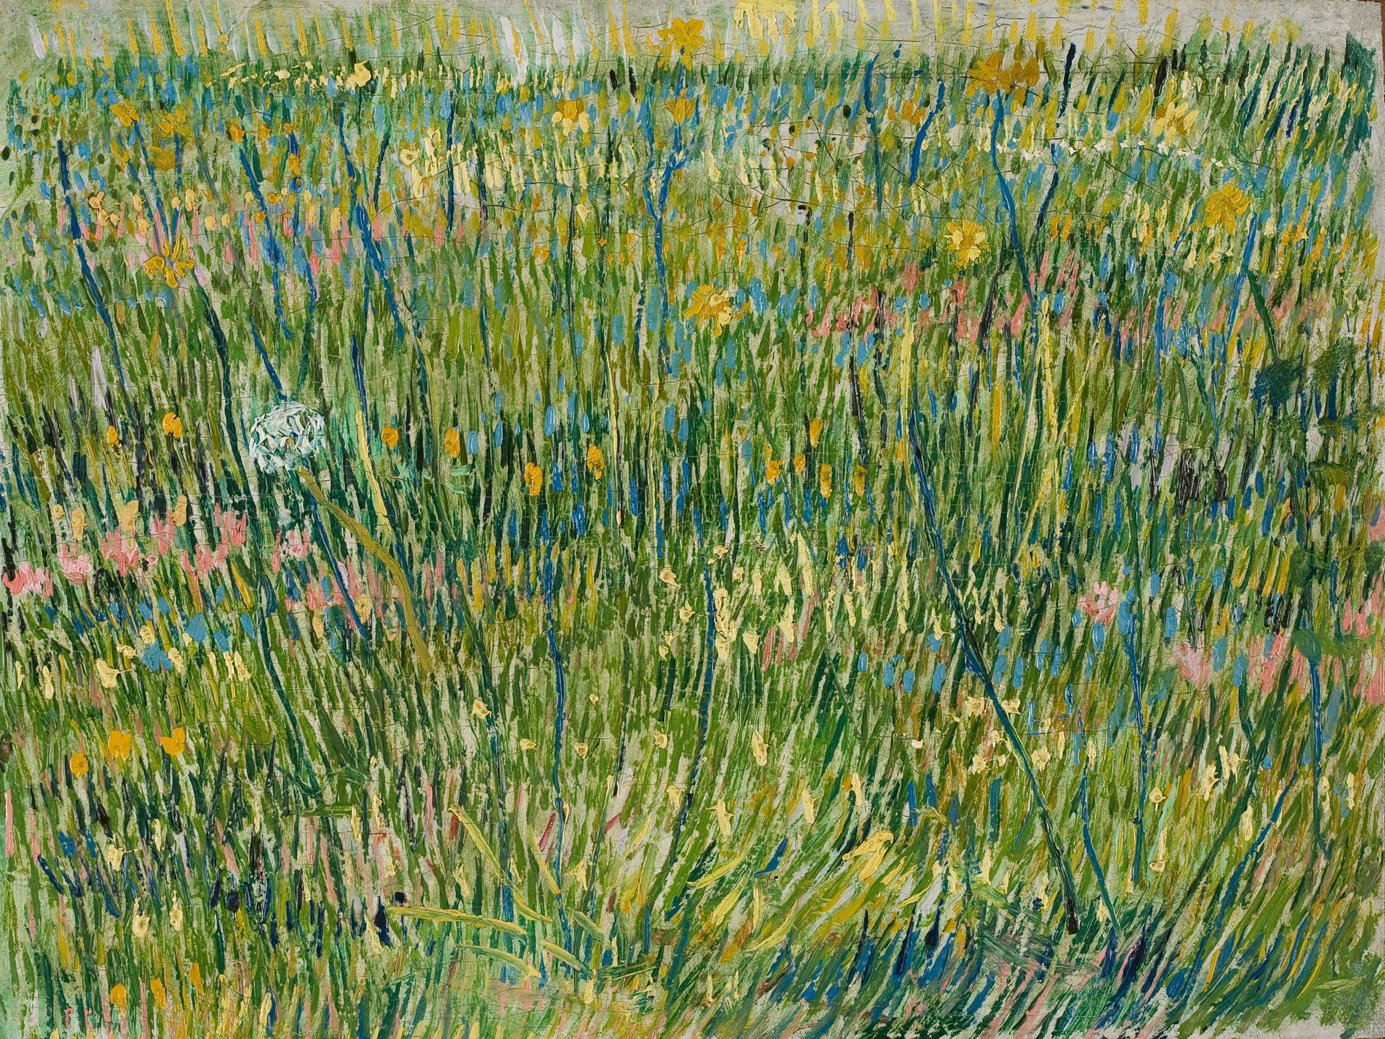 Grasfläche by Vincent van Gogh - 1887 - 39 x 30 cm Kröller-Müller Museum